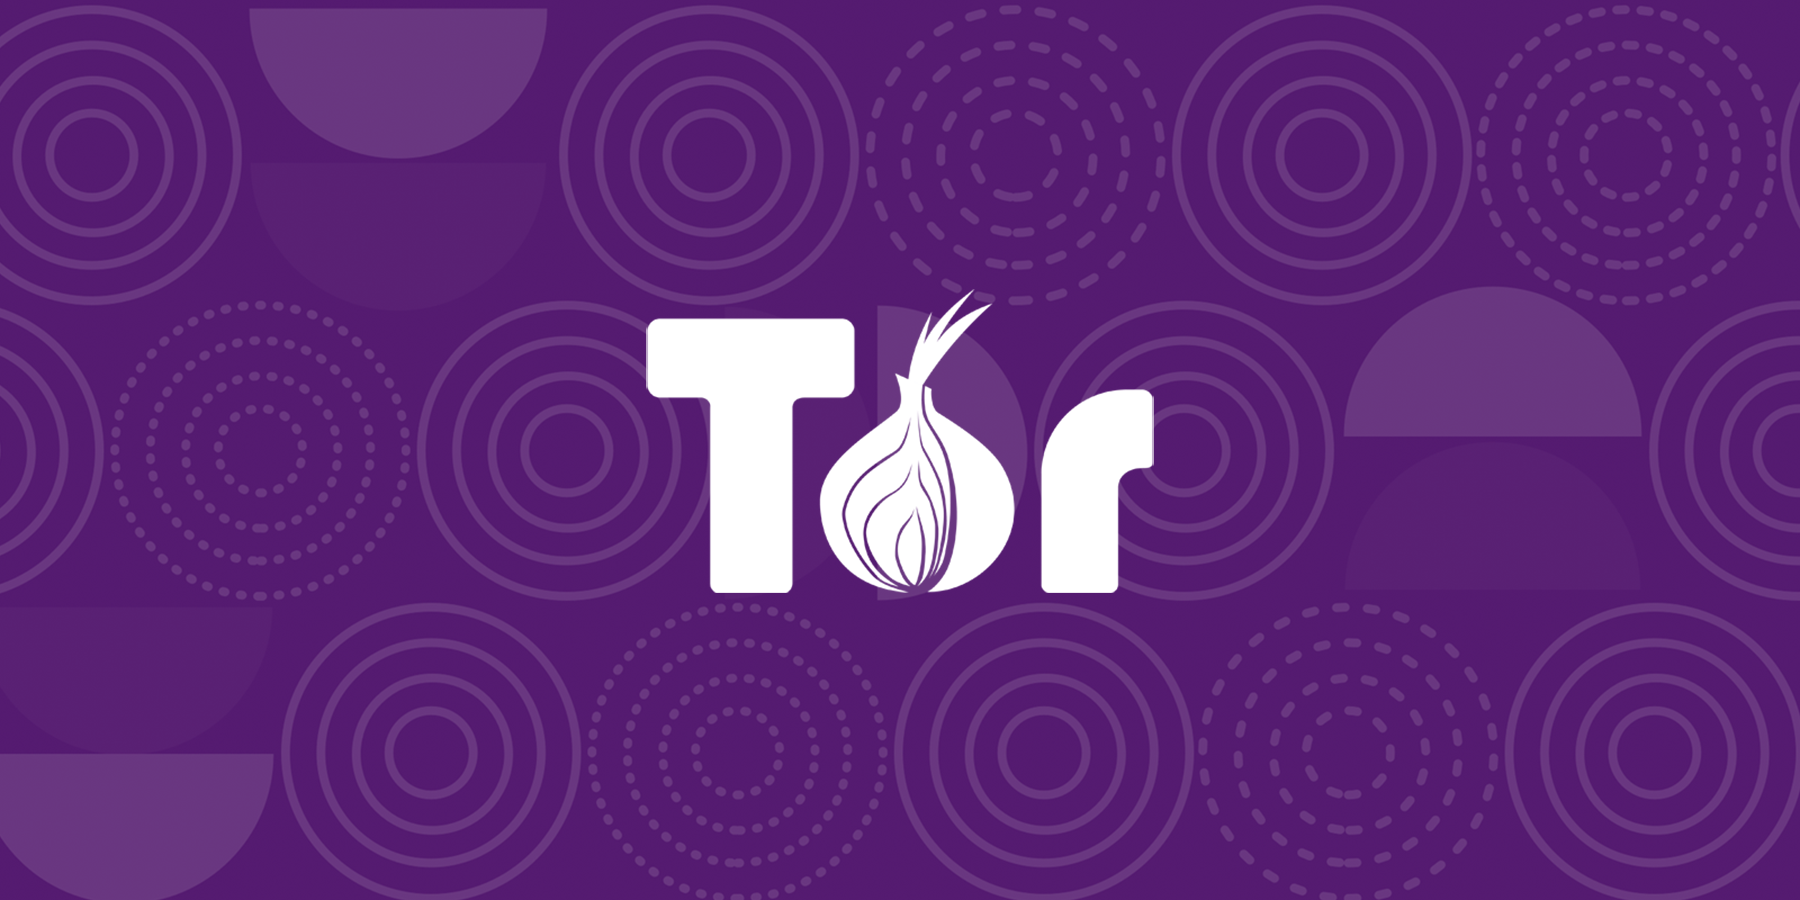 Tor browser китай hyrda тор браузер скачать бесплатно на русском для висты hydra2web